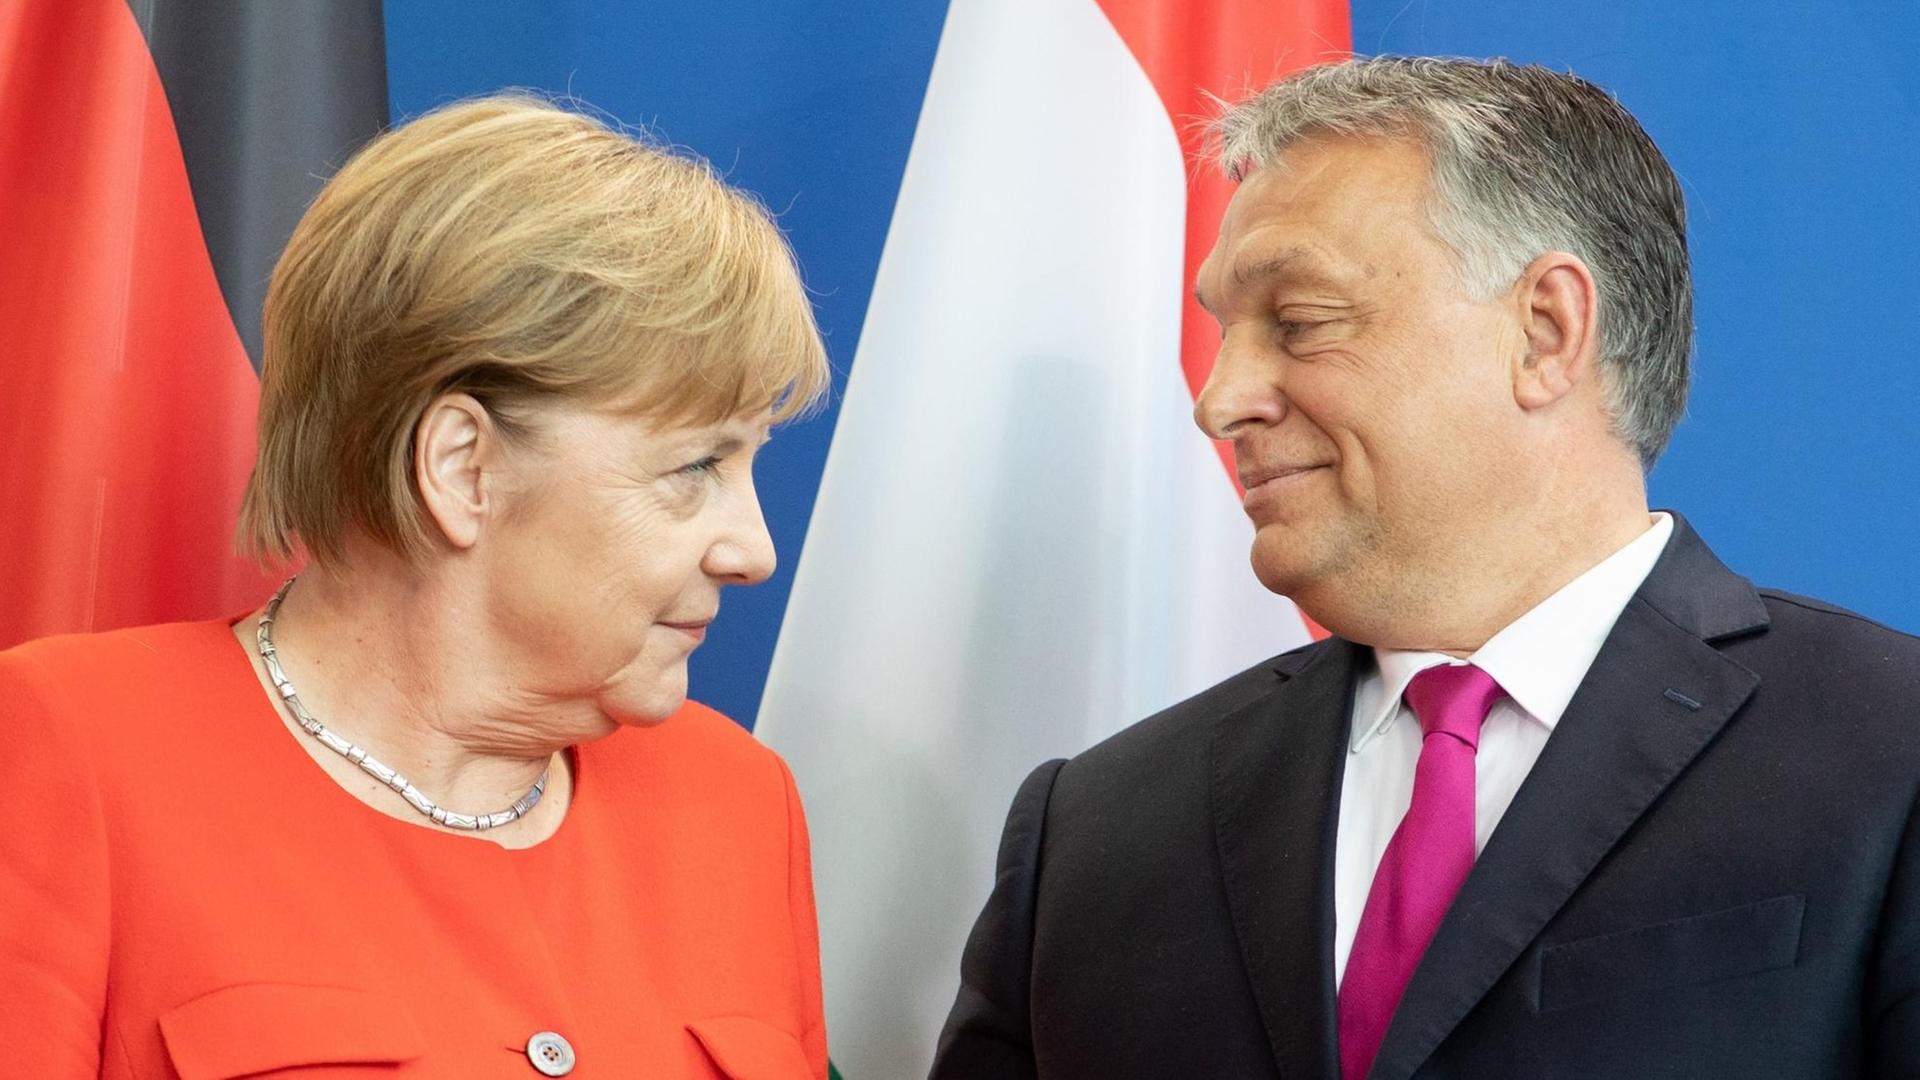 Bundeskanzlerin Angela Merkel (CDU) und Victor Orban, Ministerpräsident von Ungarn, schauen sich im Bundeskanzleramt nach einer Pressekonferenz in die Augen.